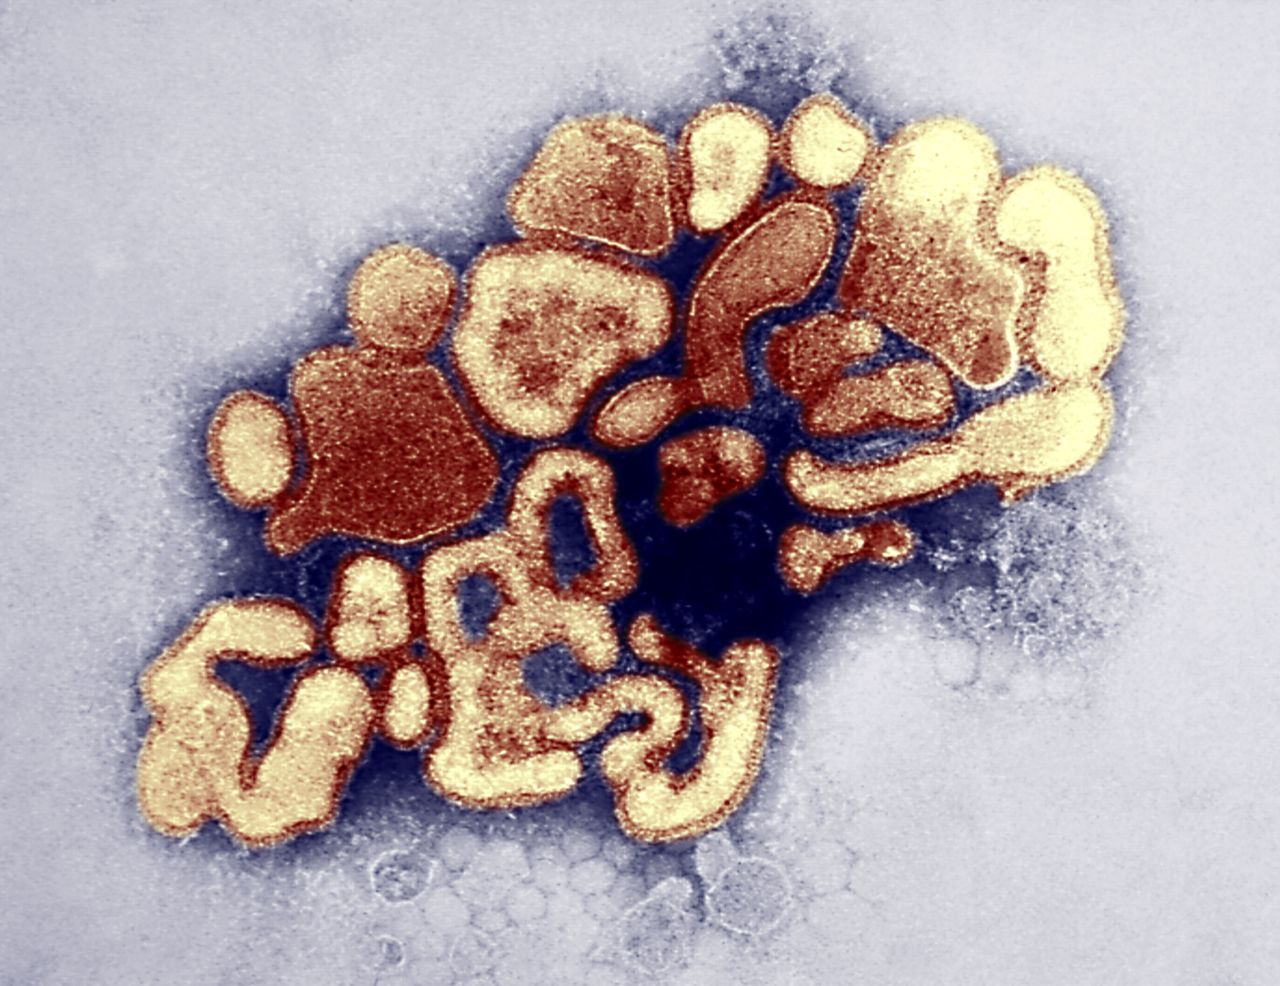 豚インフルウイルスの透過型電子顕微鏡写真（Photo By BSIP/UIG Via Getty Images）